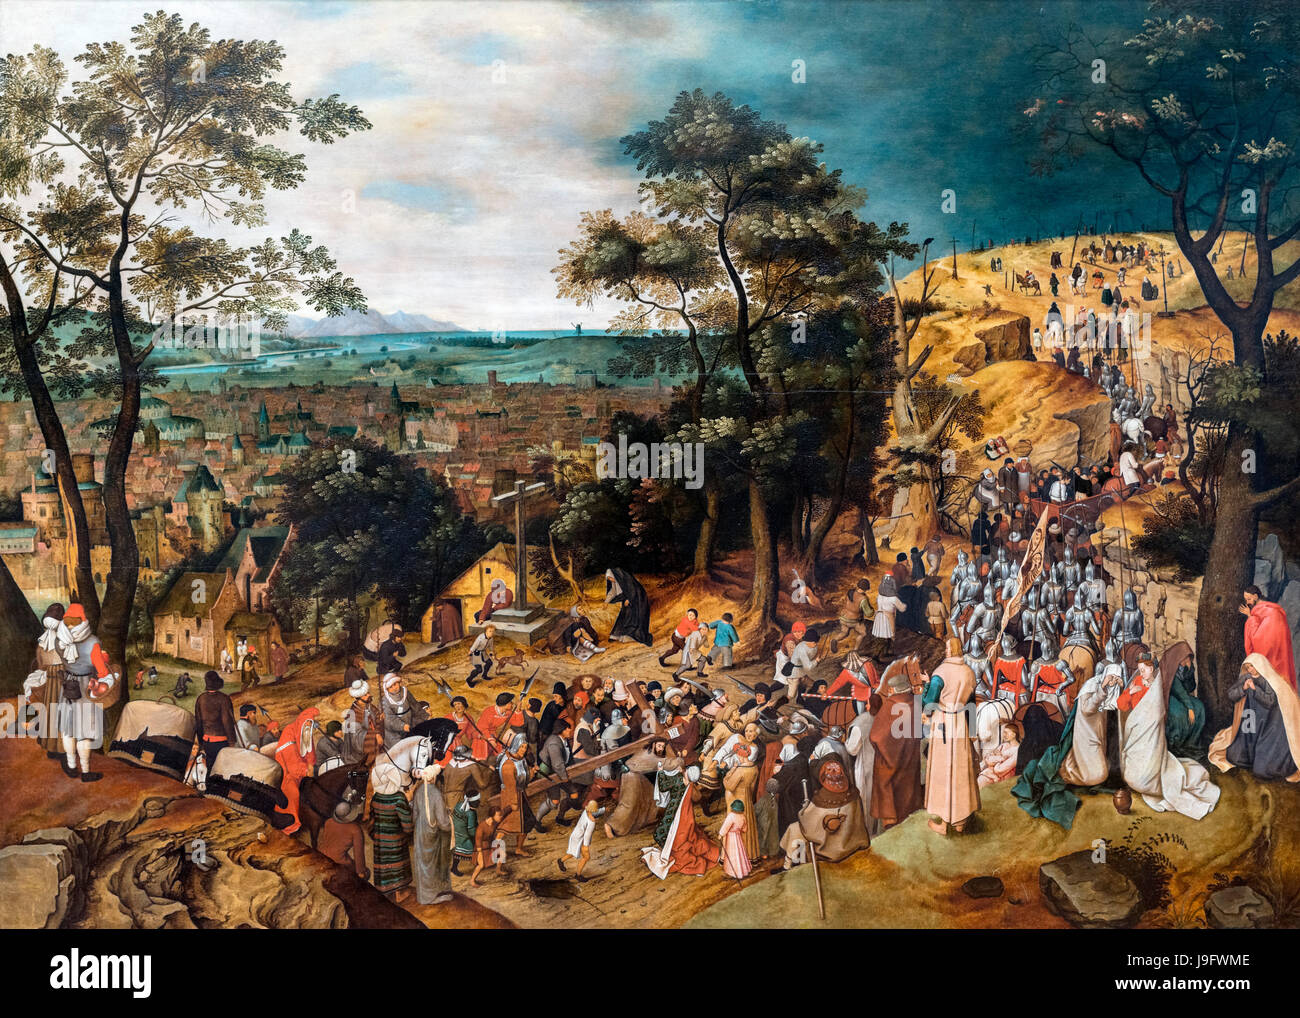 Le chemin du Calvaire de Pieter Brueghel le Jeune (1564-1638), 1606 Banque D'Images